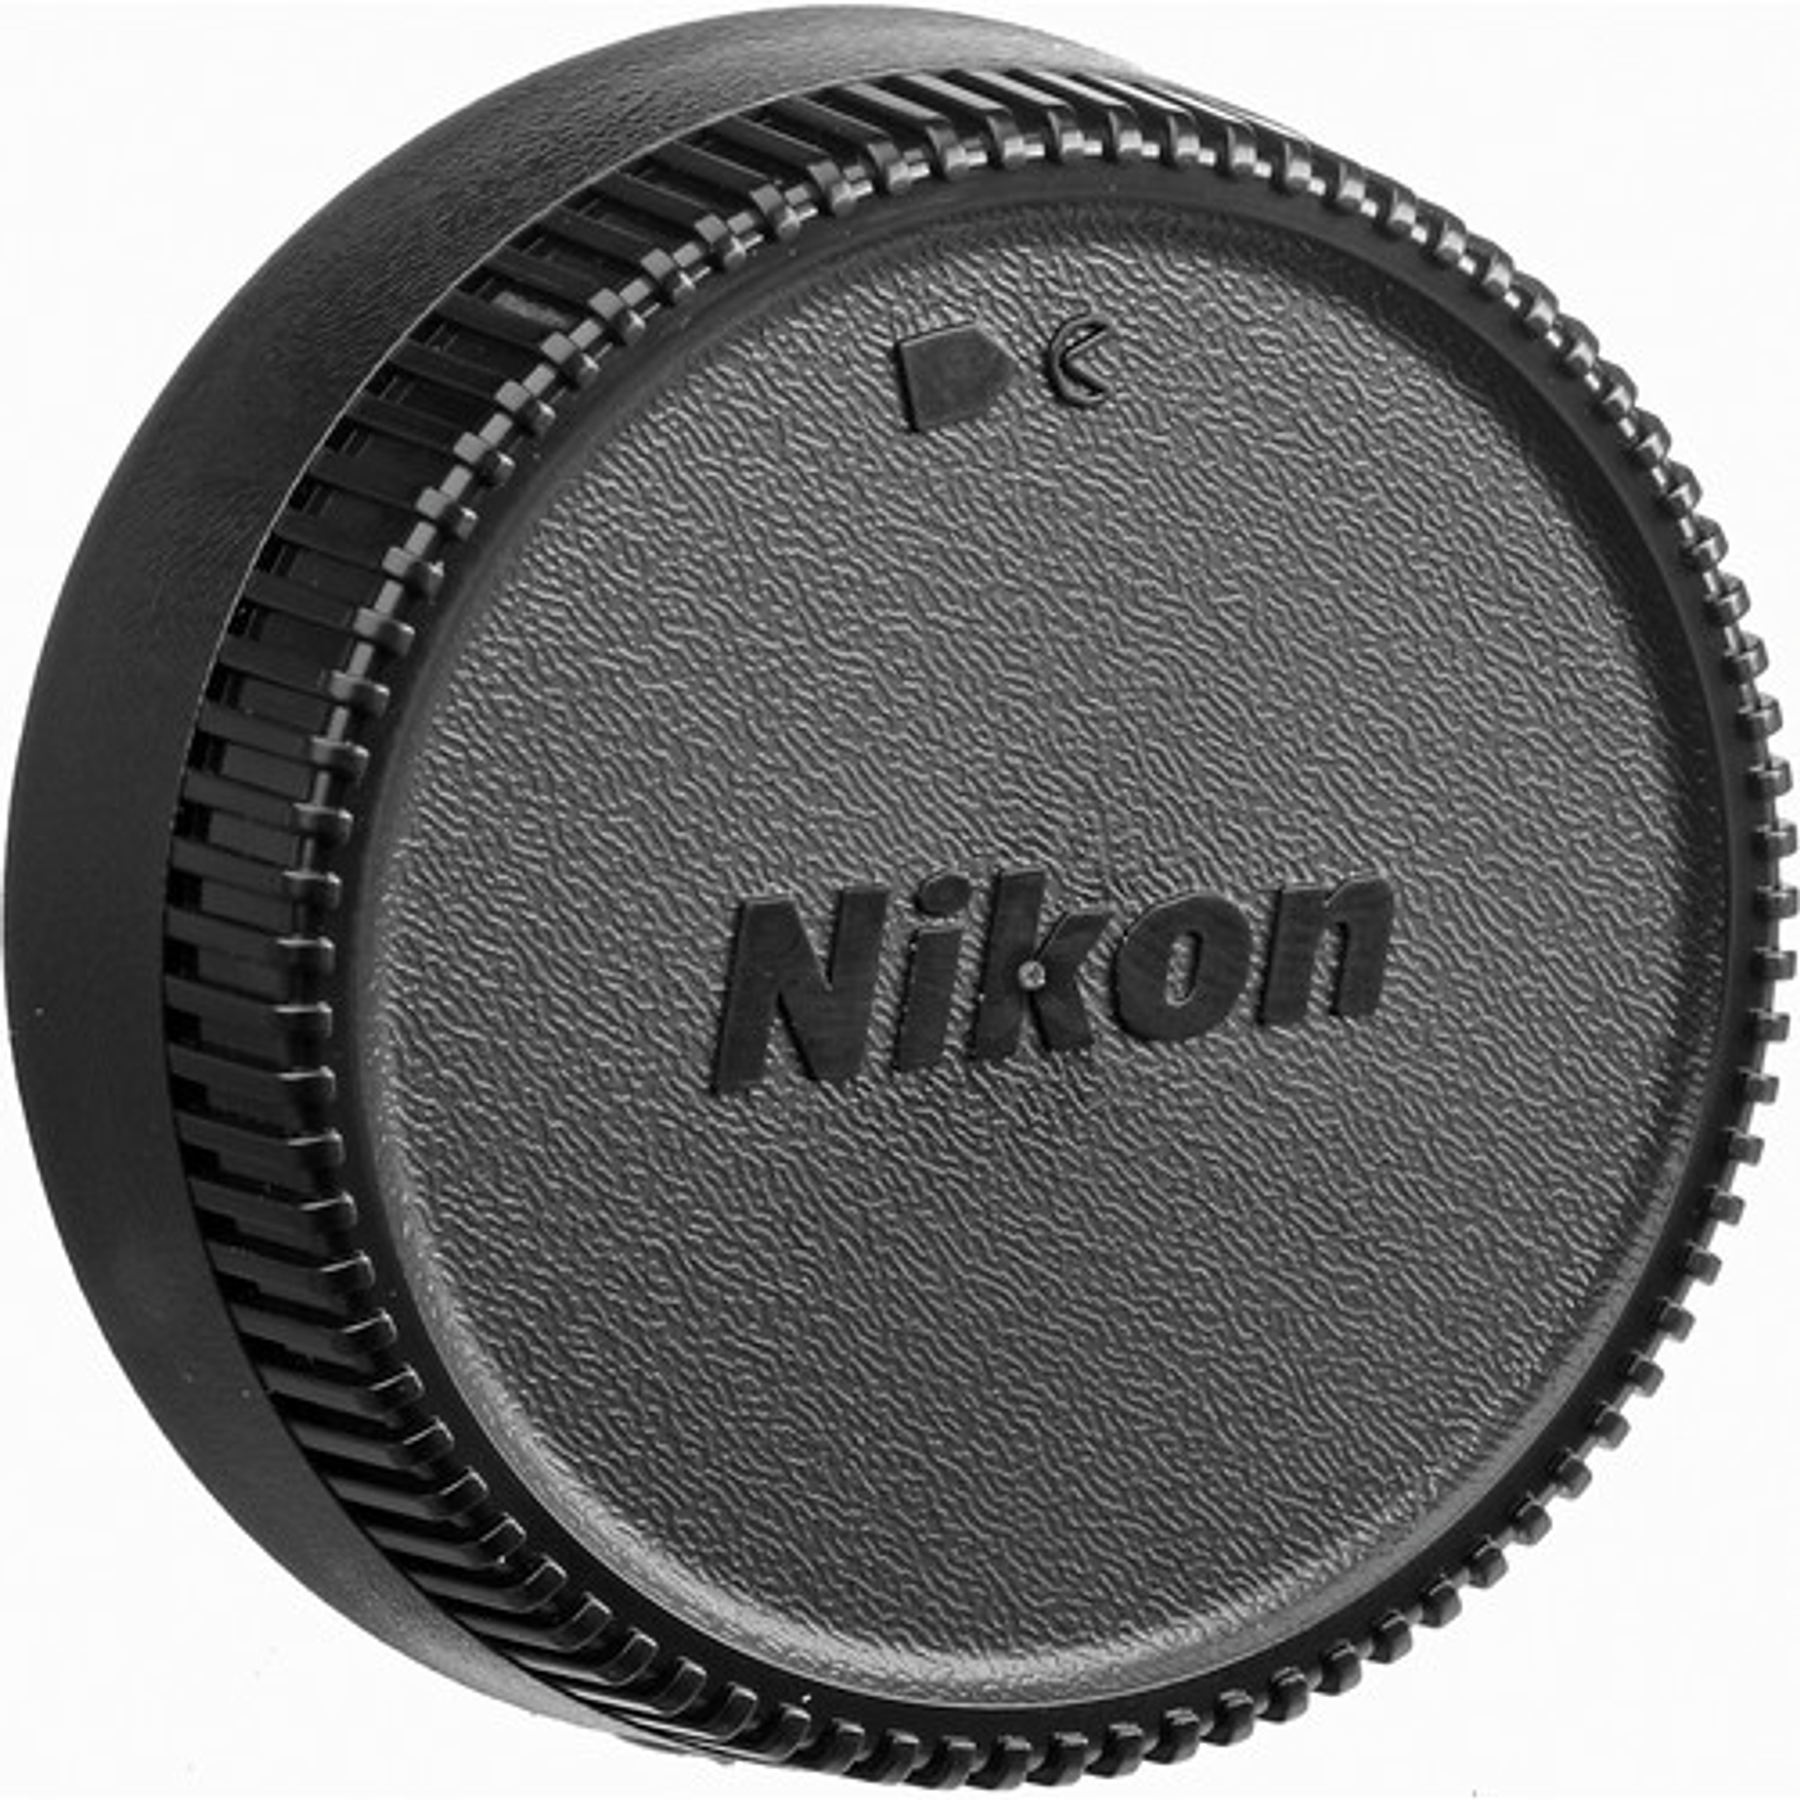 Nikon F AF-S 17-35 f2.8D IF-ED